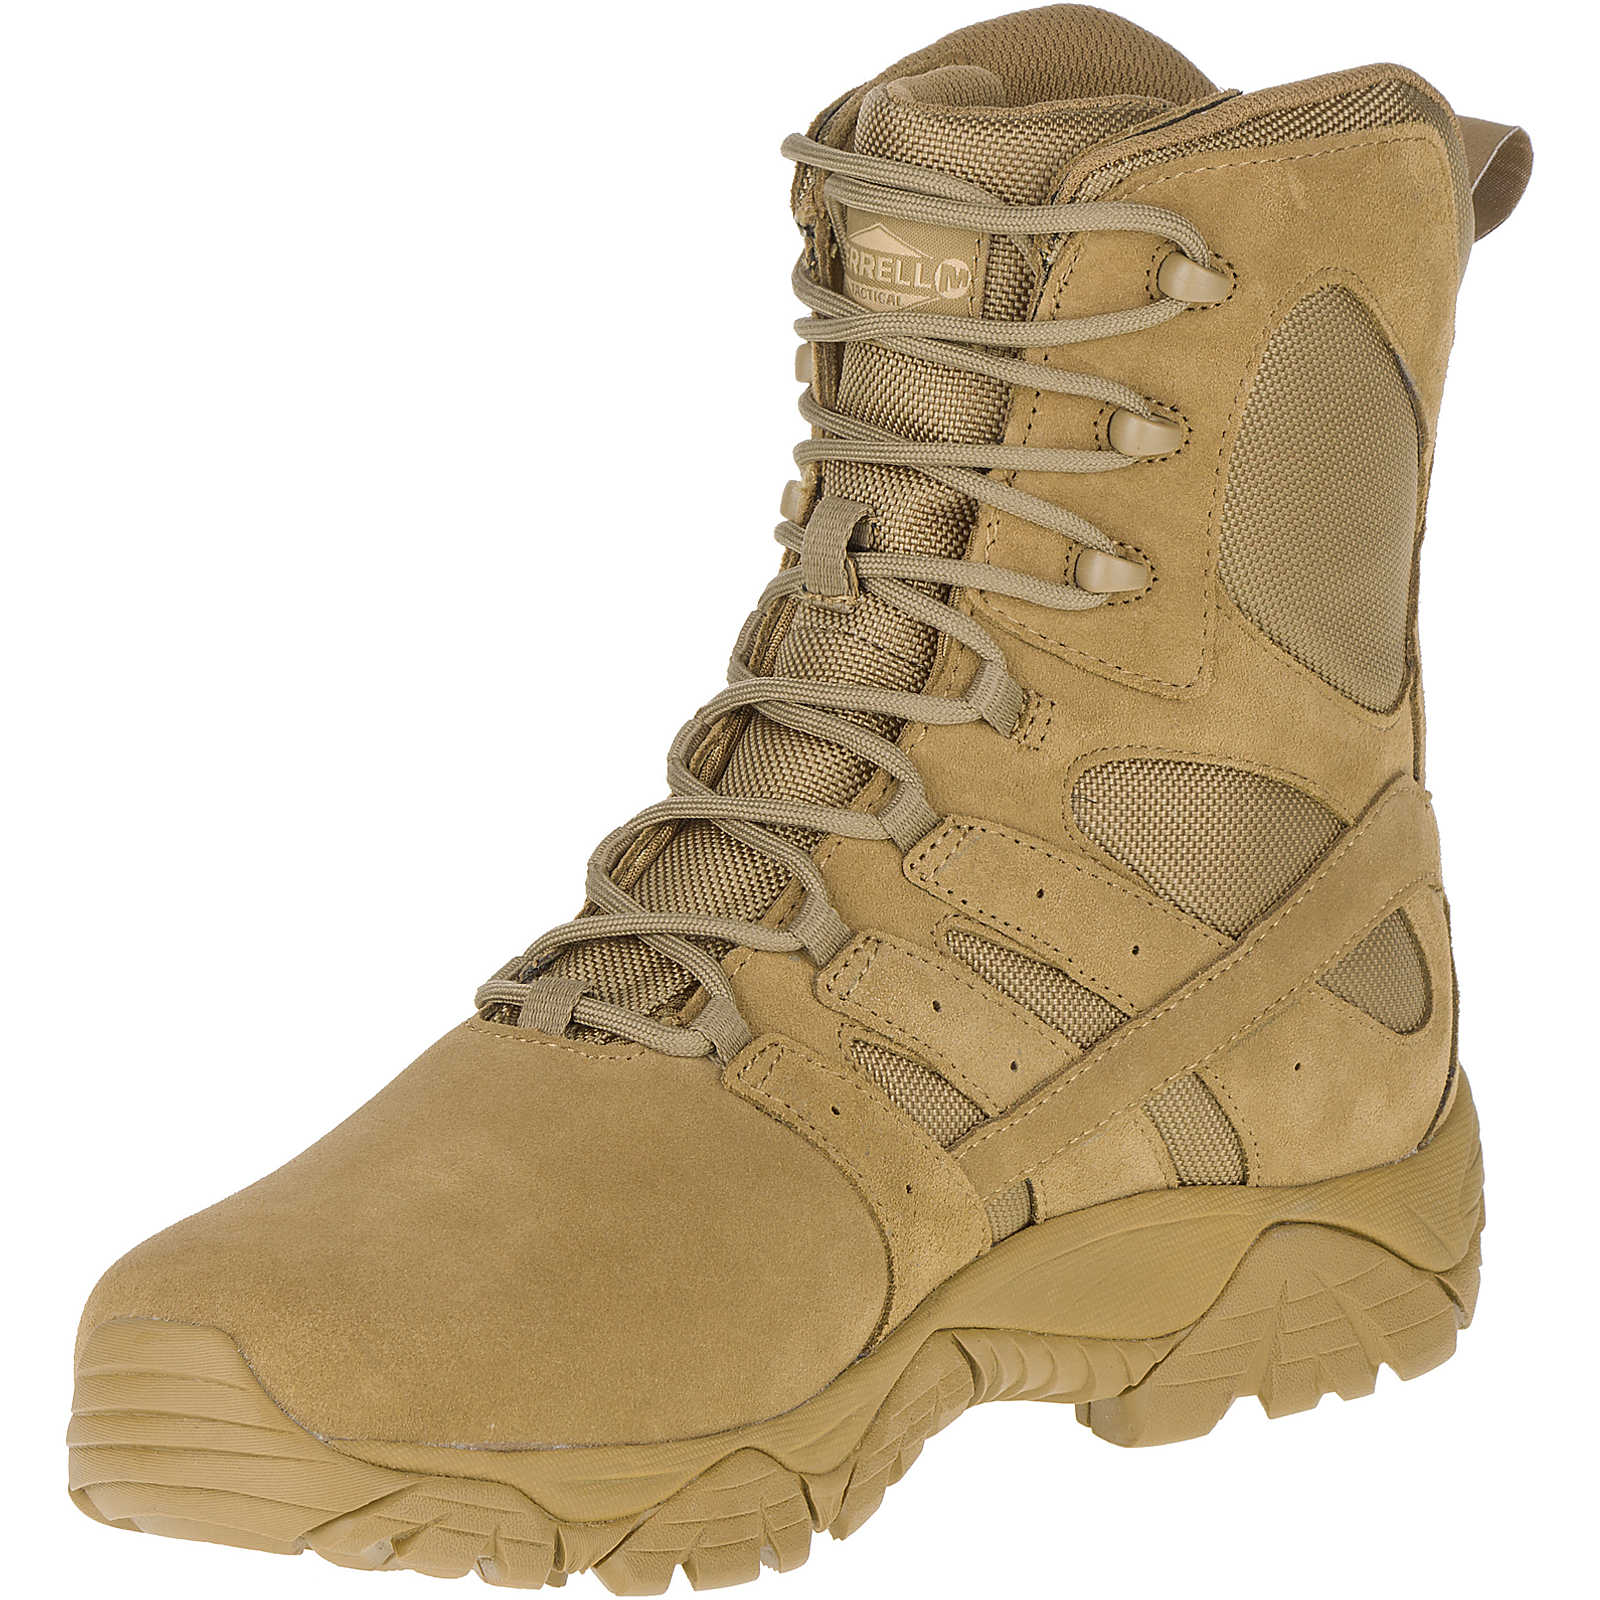 Merrell Tactical Men's Moab 2 8" Tactical Defense Boot Coyote Tactical Gear Australia Supplier Distributor Dealer